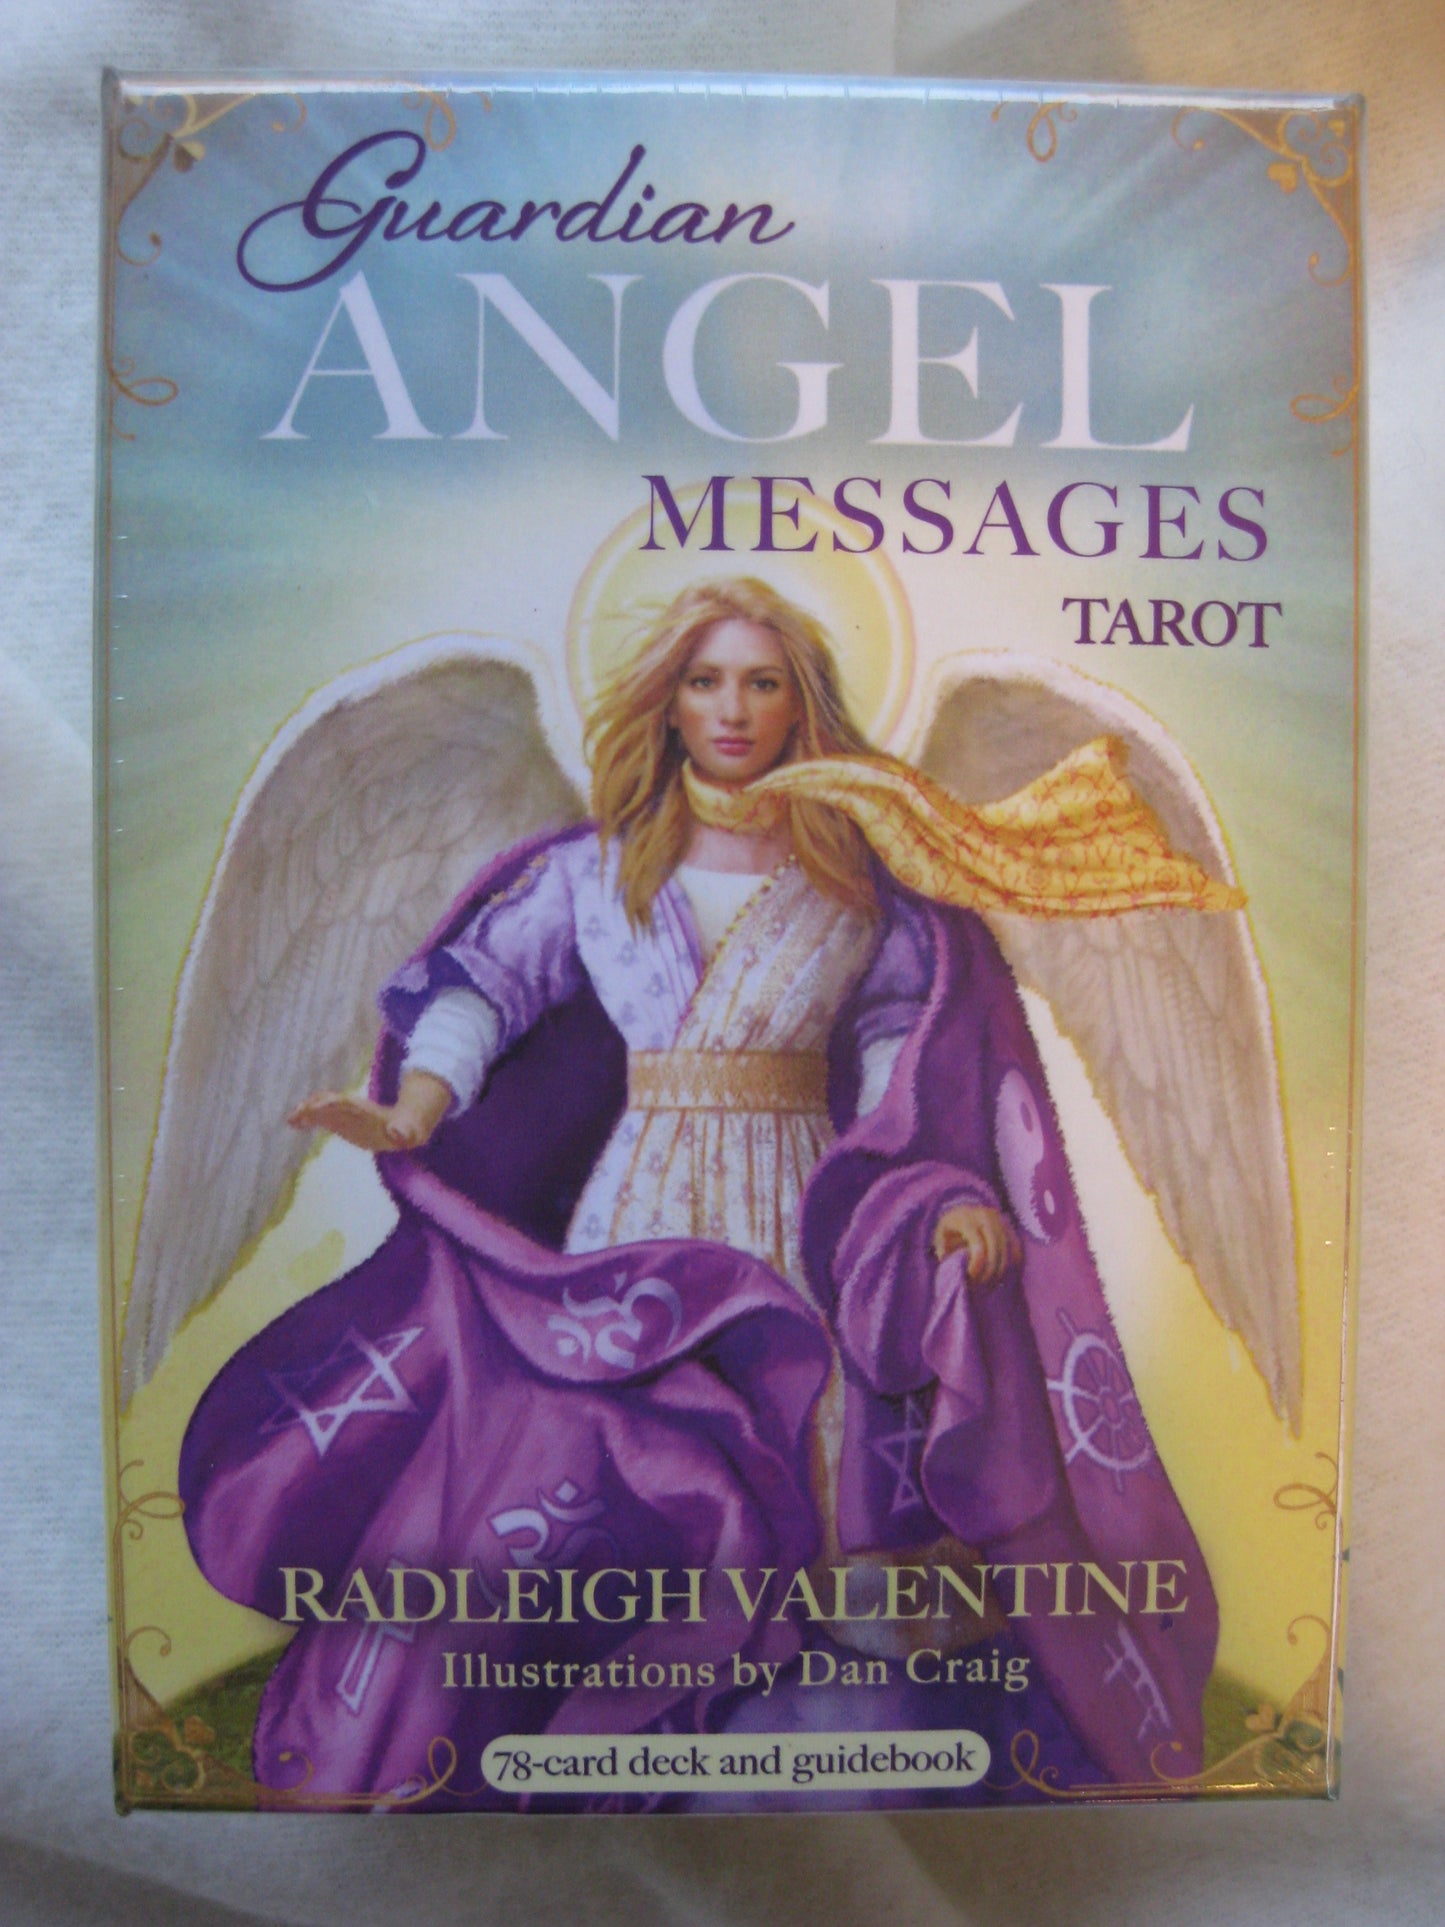 Guardian angel messages tarot